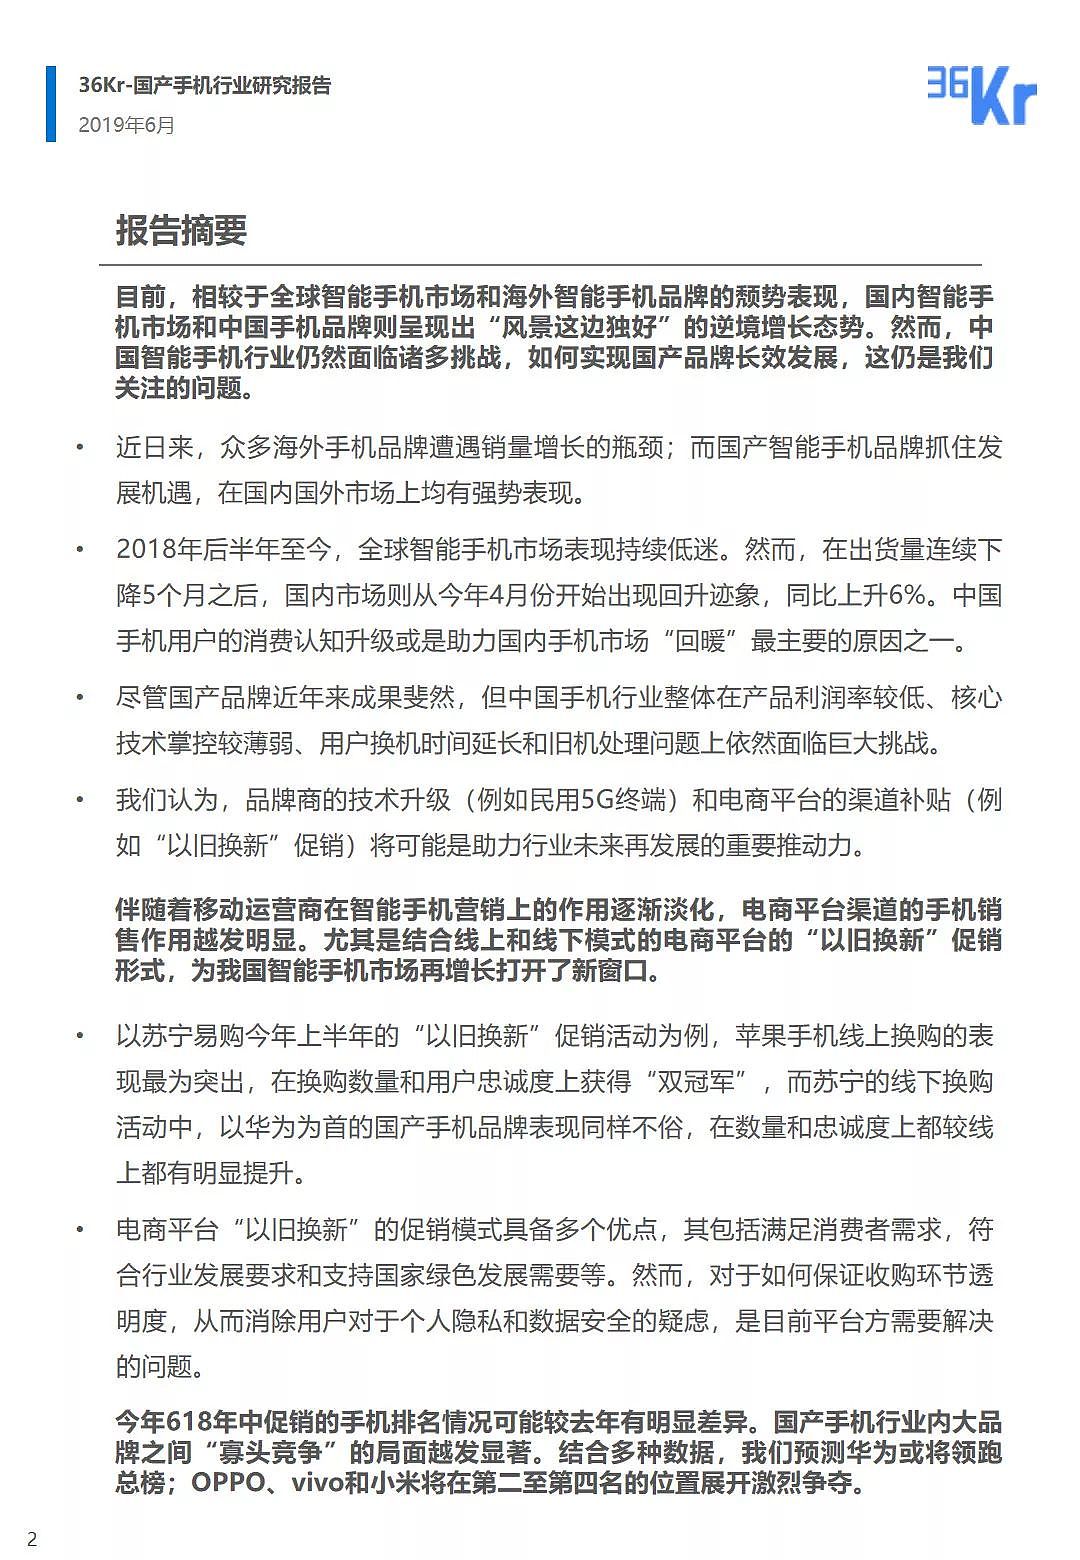 中国手机品牌市场营销研究报告 | 36氪研究 - 3